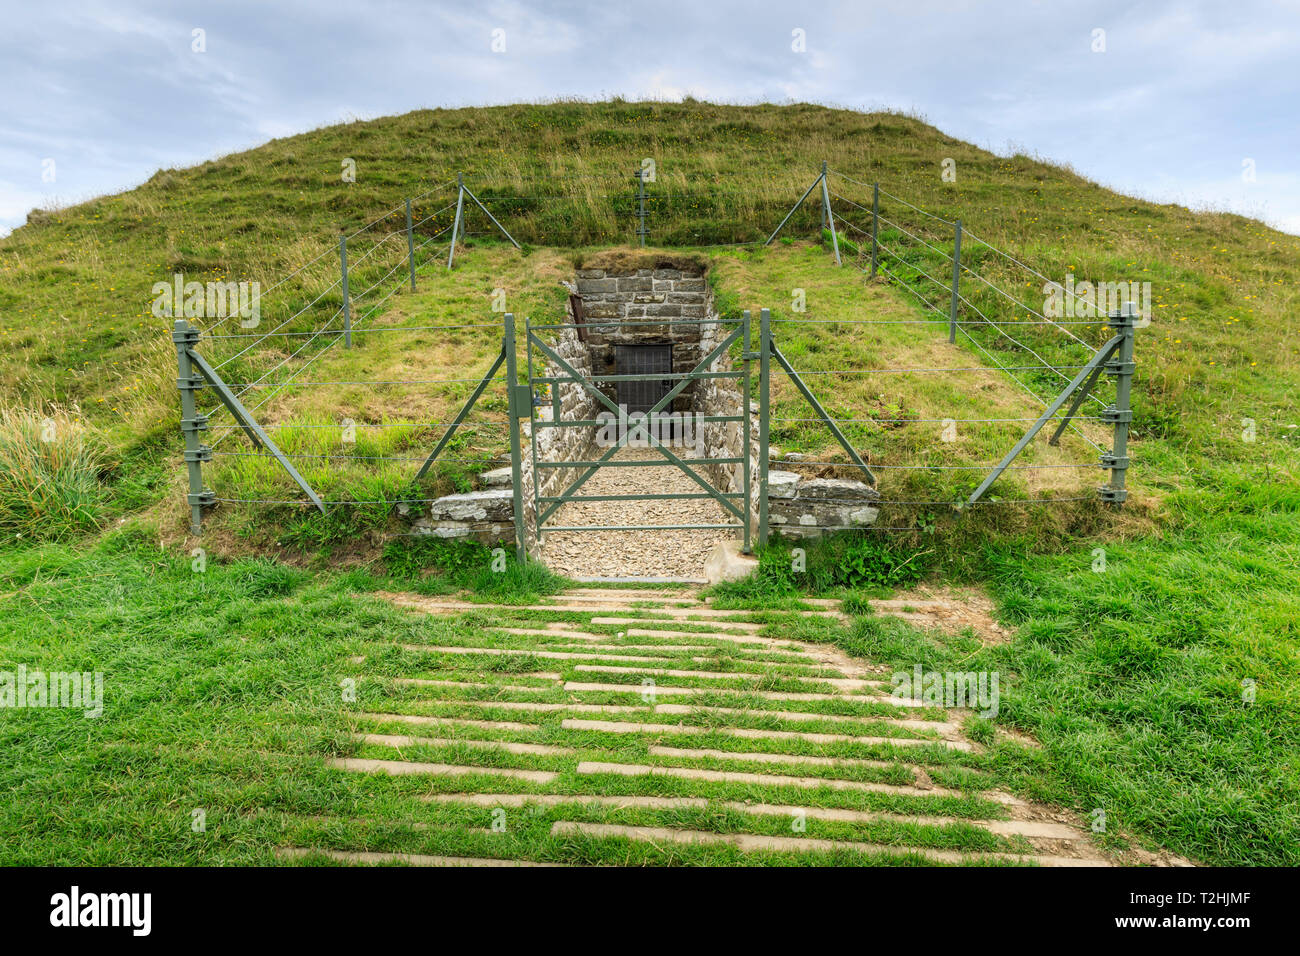 Maeshowe, Età della pietra tomba chambered, 5000 anni, edificio del neolitico, Sito Patrimonio Mondiale dell'UNESCO, isole Orcadi Scozia, Regno Unito, Europa Foto Stock